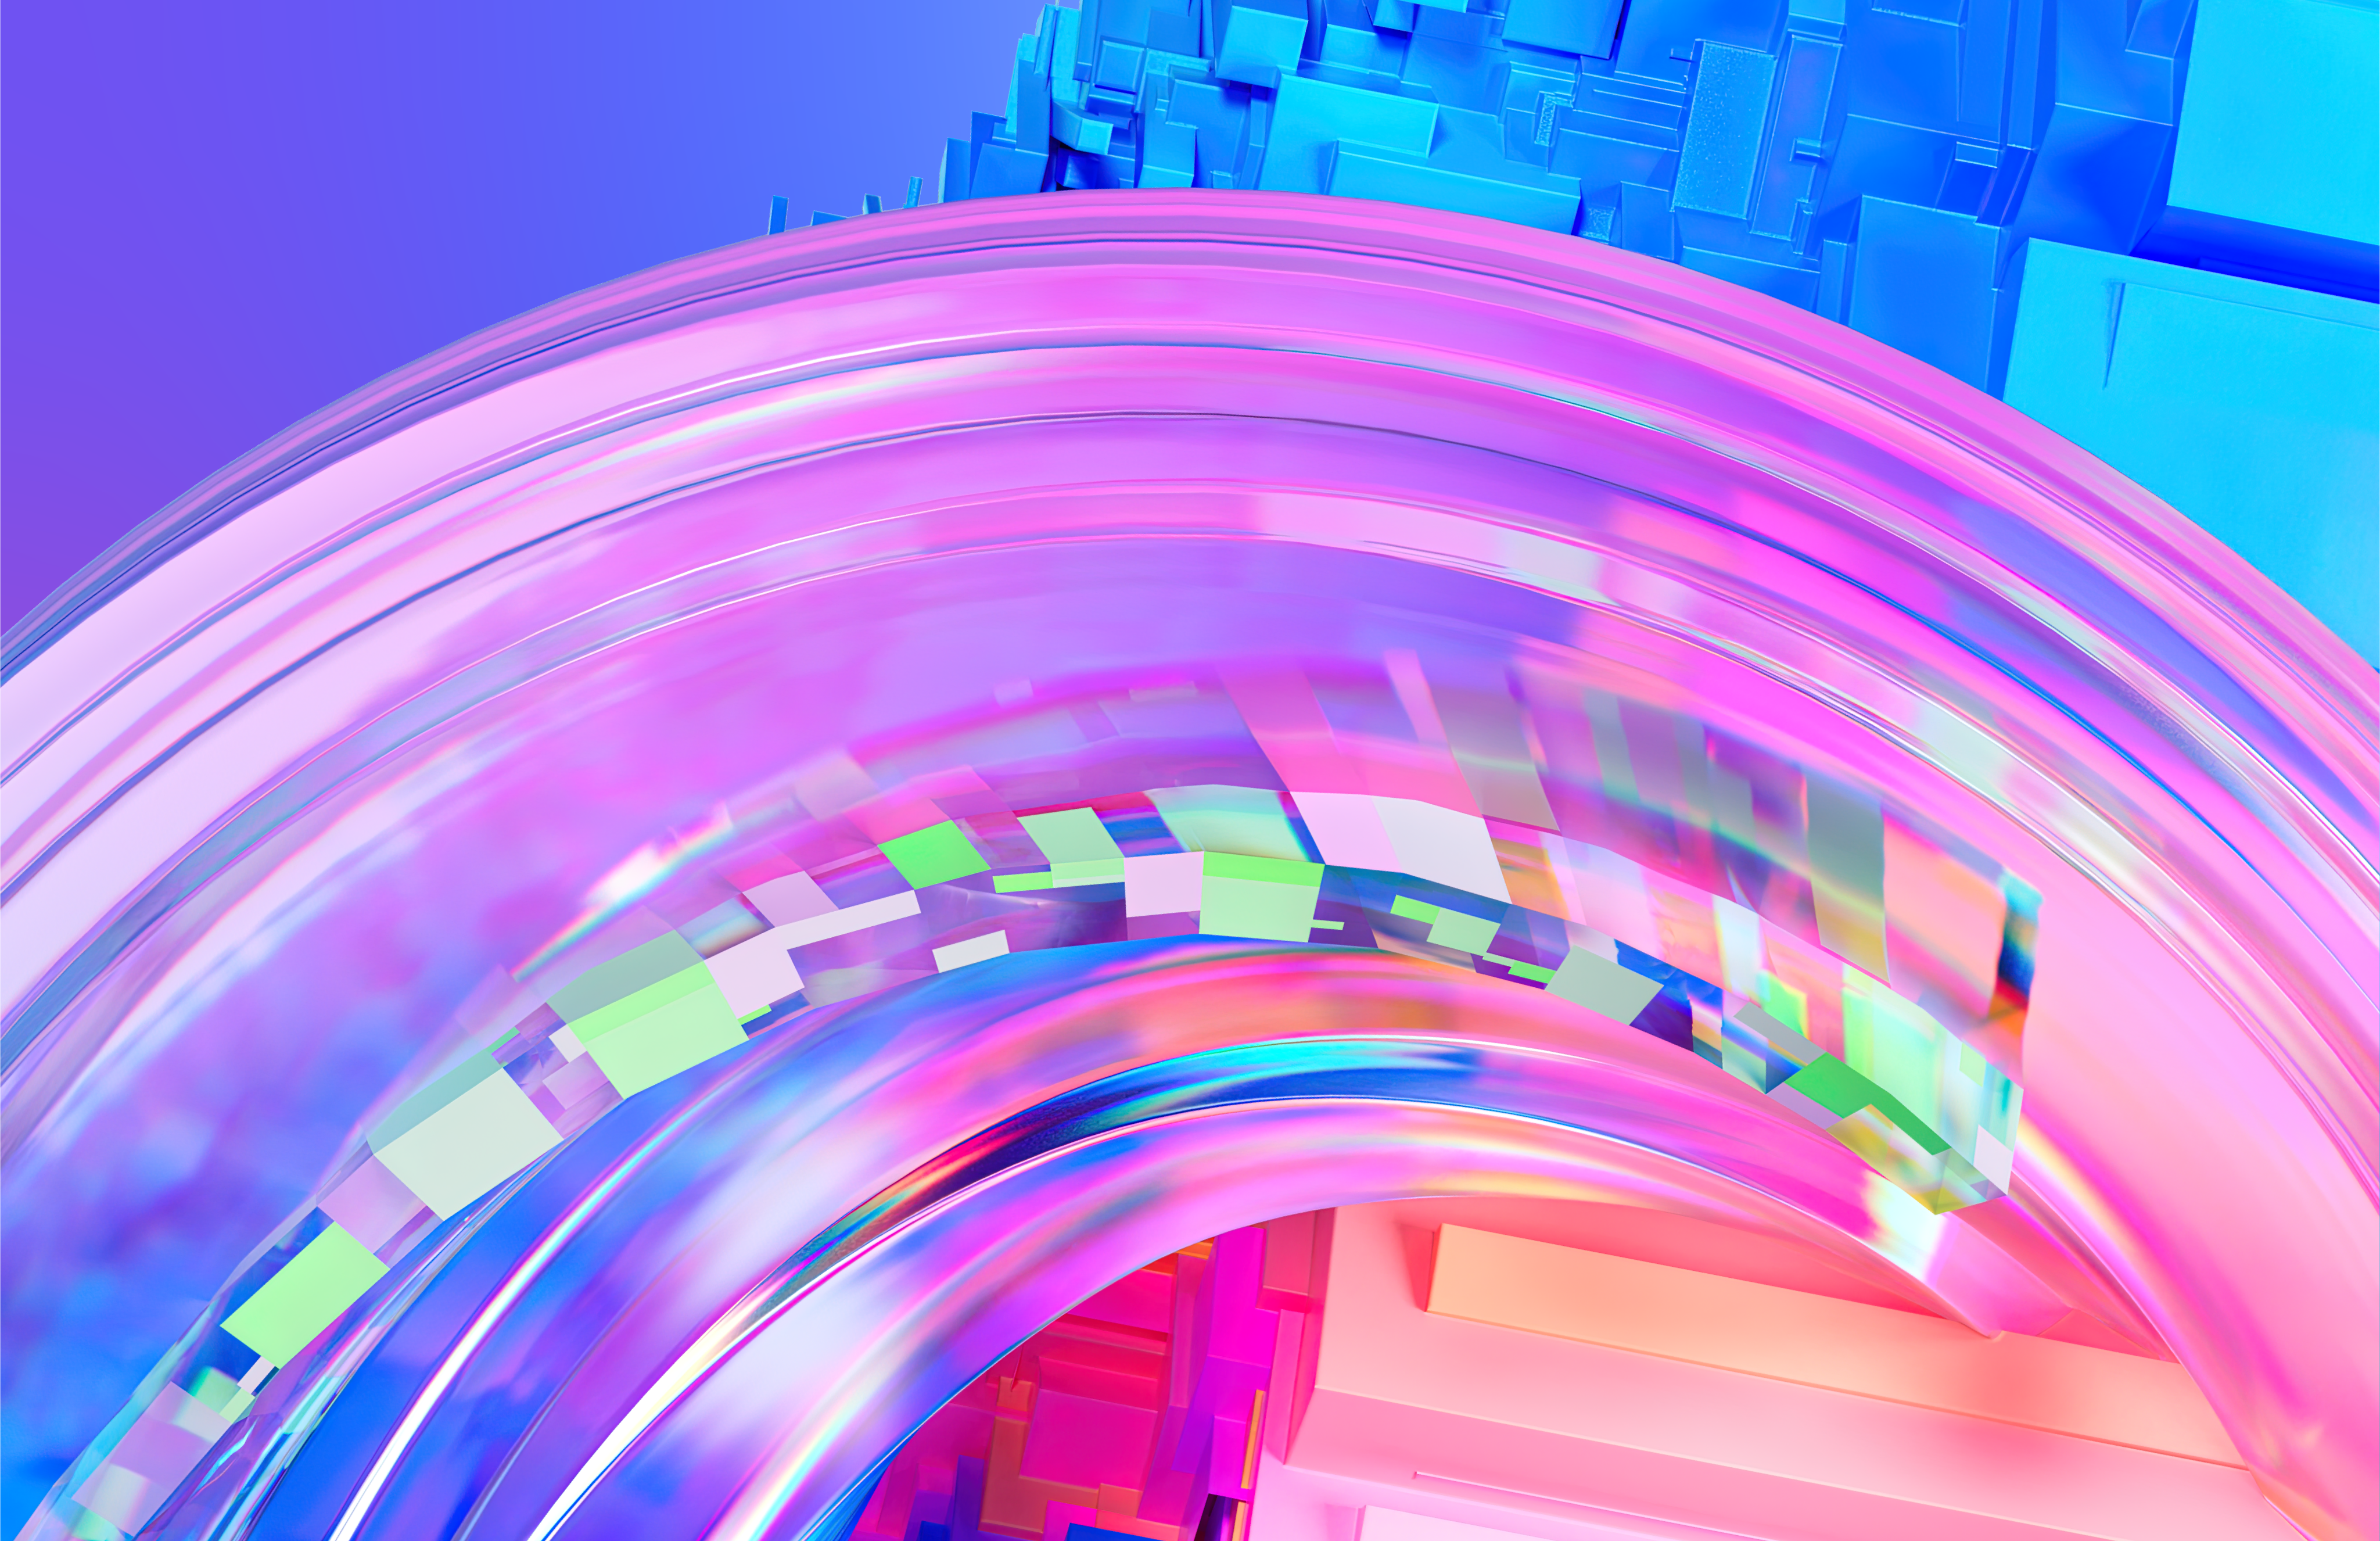 Microsoft Microsoft Azure Colorful Swirly Bright 4097x2652